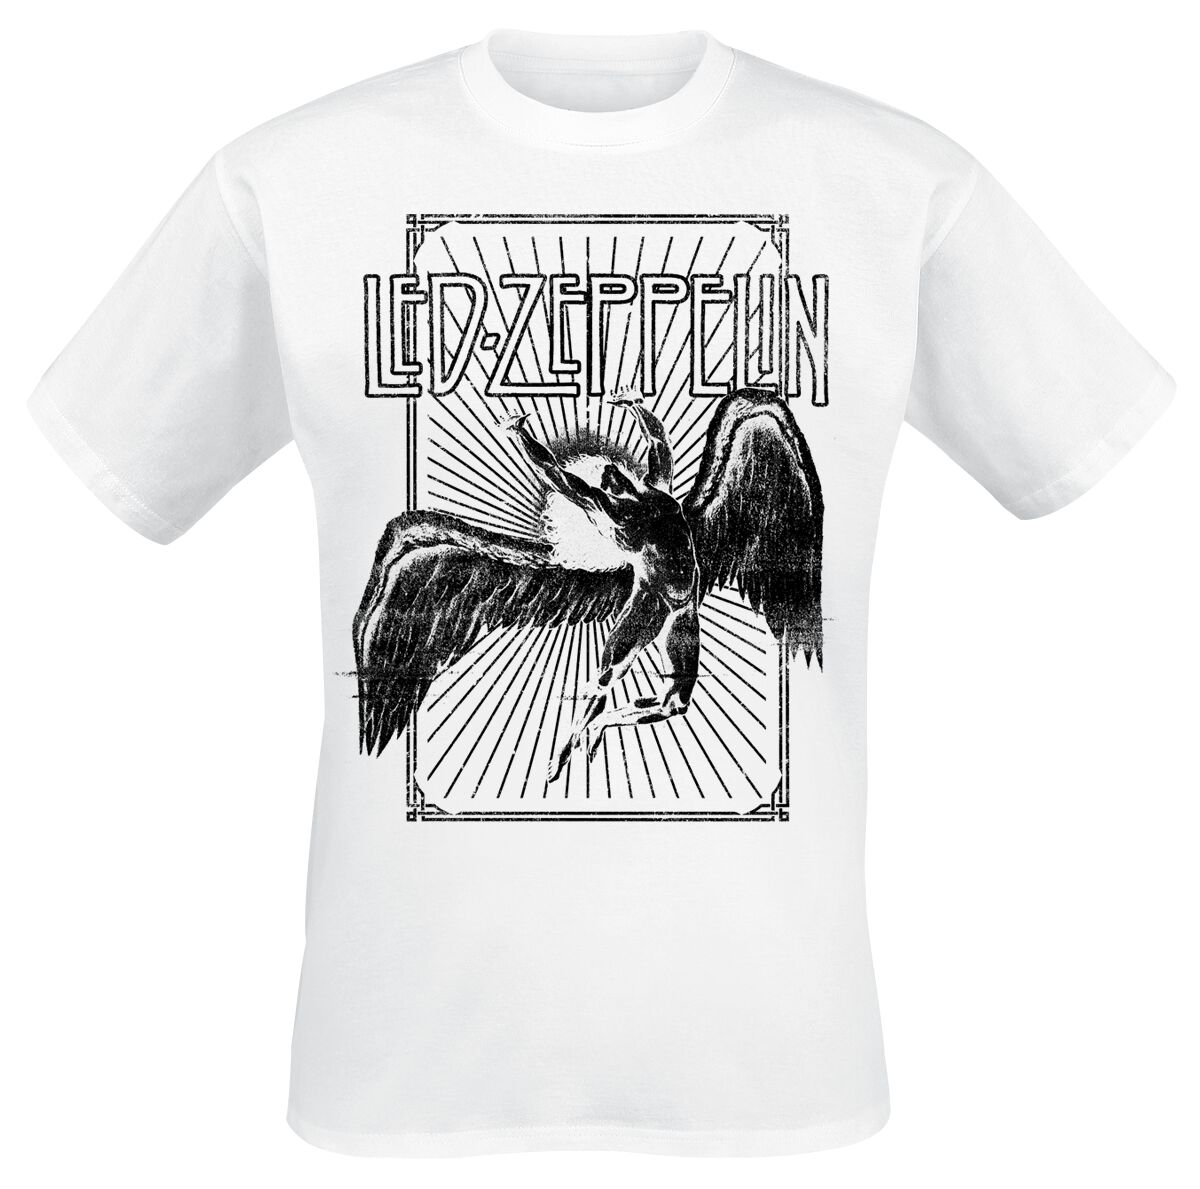 T-Shirt Manches courtes de Led Zeppelin - Icarus Burst - S à XXL - pour Homme - blanc